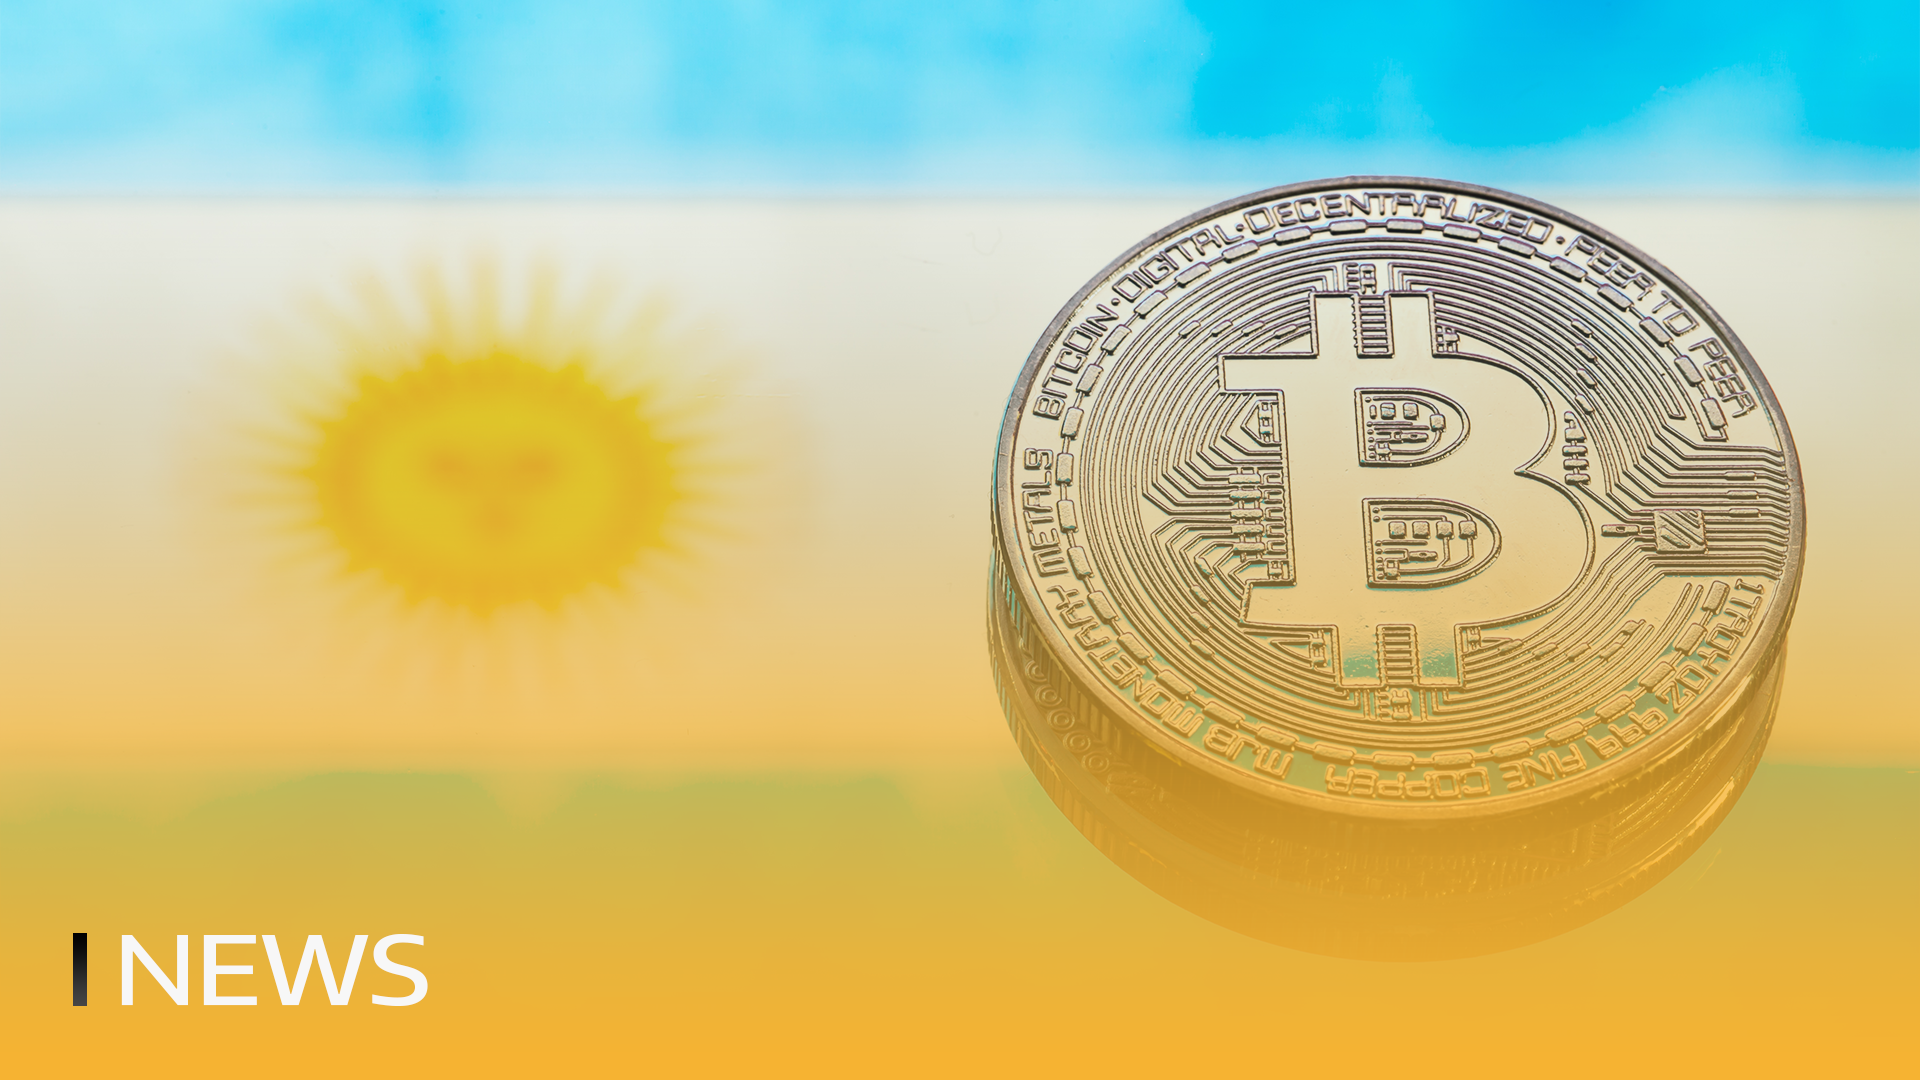 Offiziell: Kontakte in Argentinien können in Bitcoin abgewickelt werden